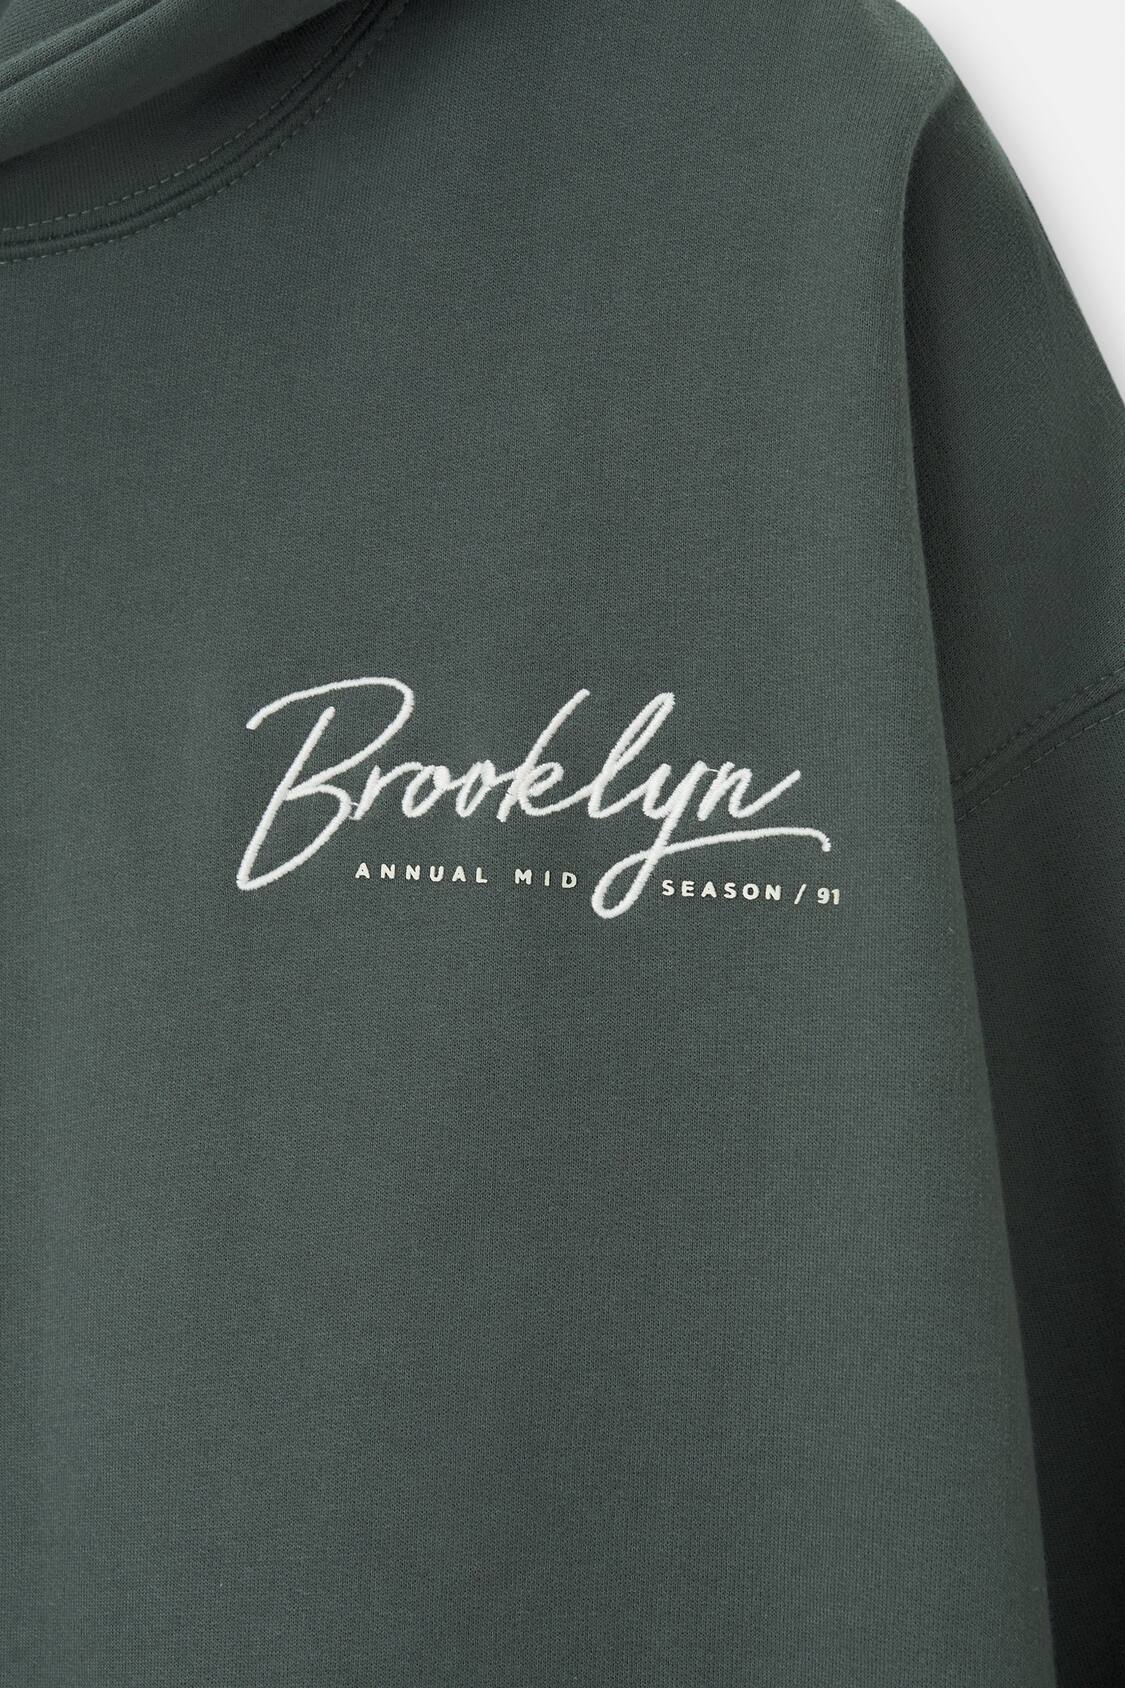 Pull&Bear Brooklyn hoodie in black